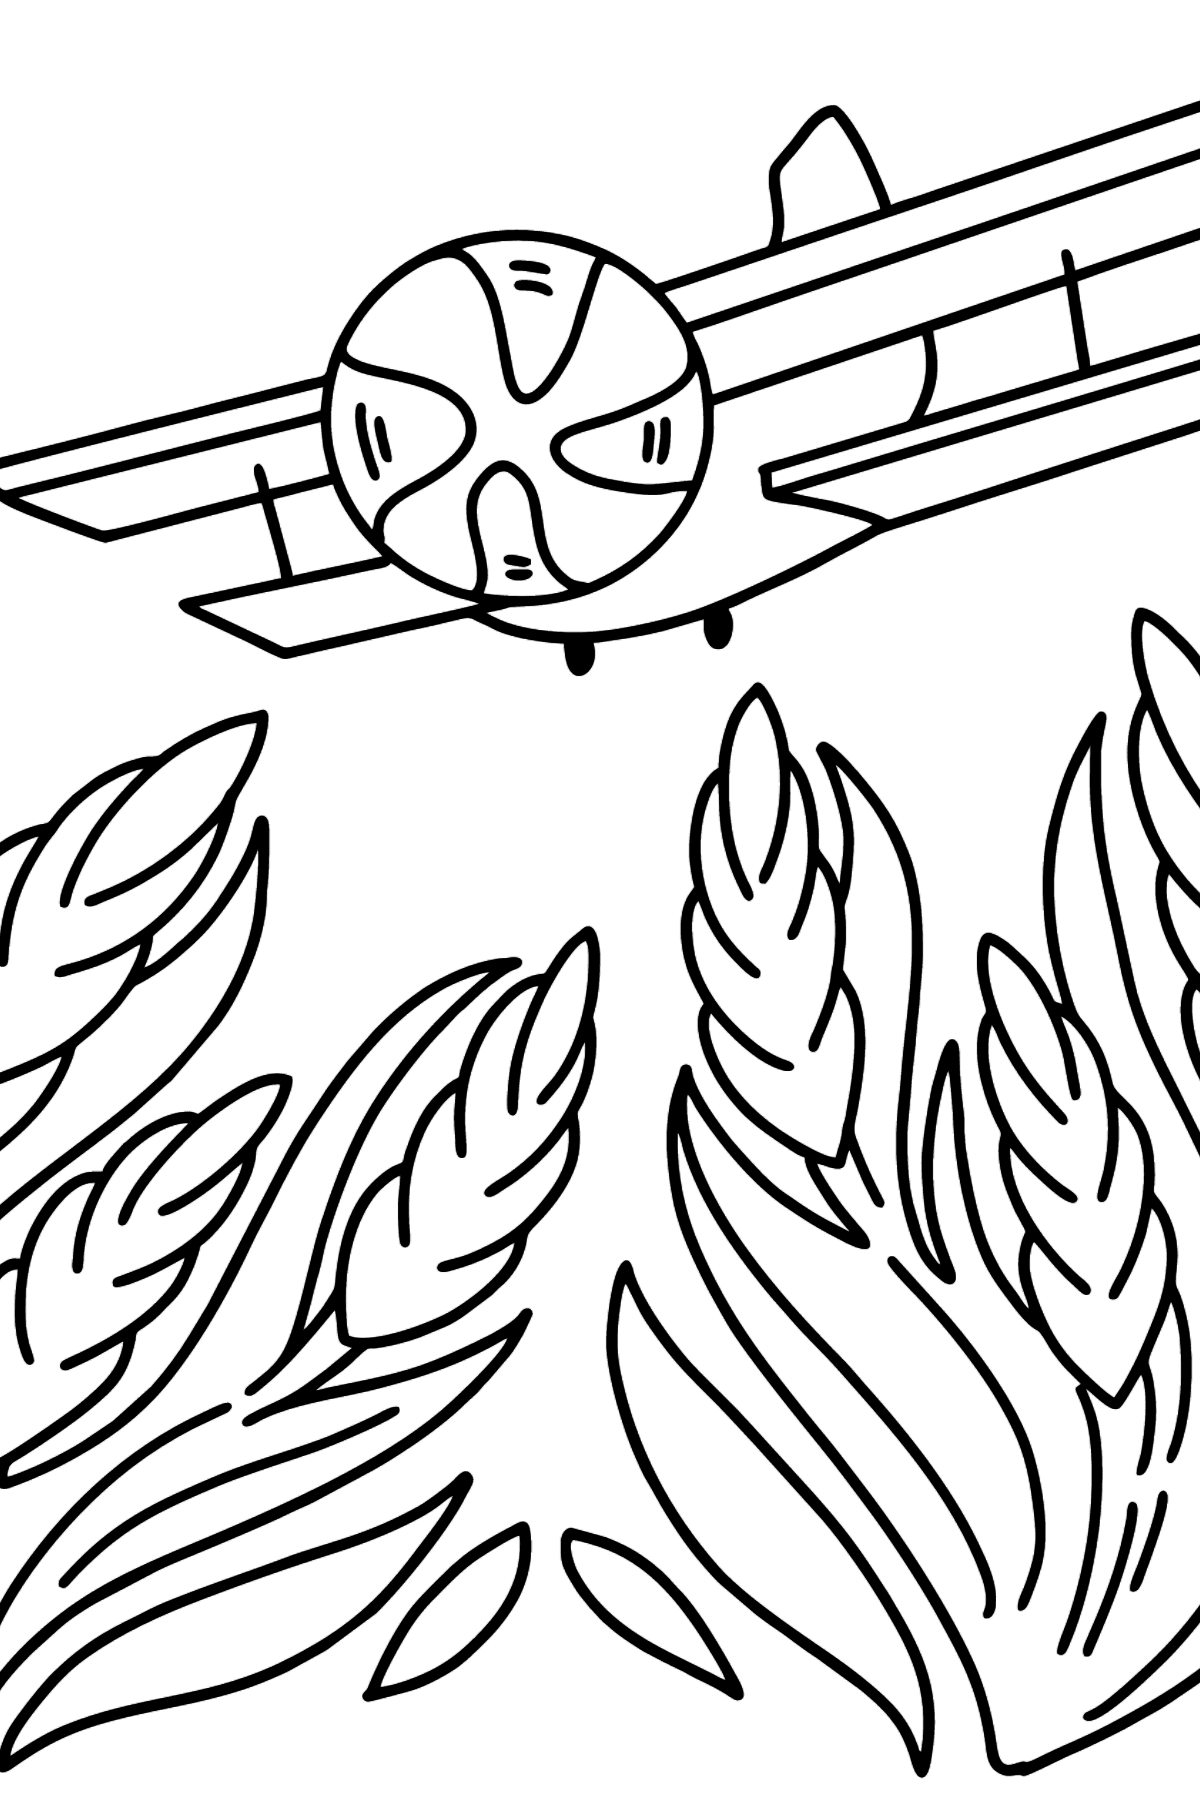 Раскраска Самолет АН-2 - Картинки для Детей